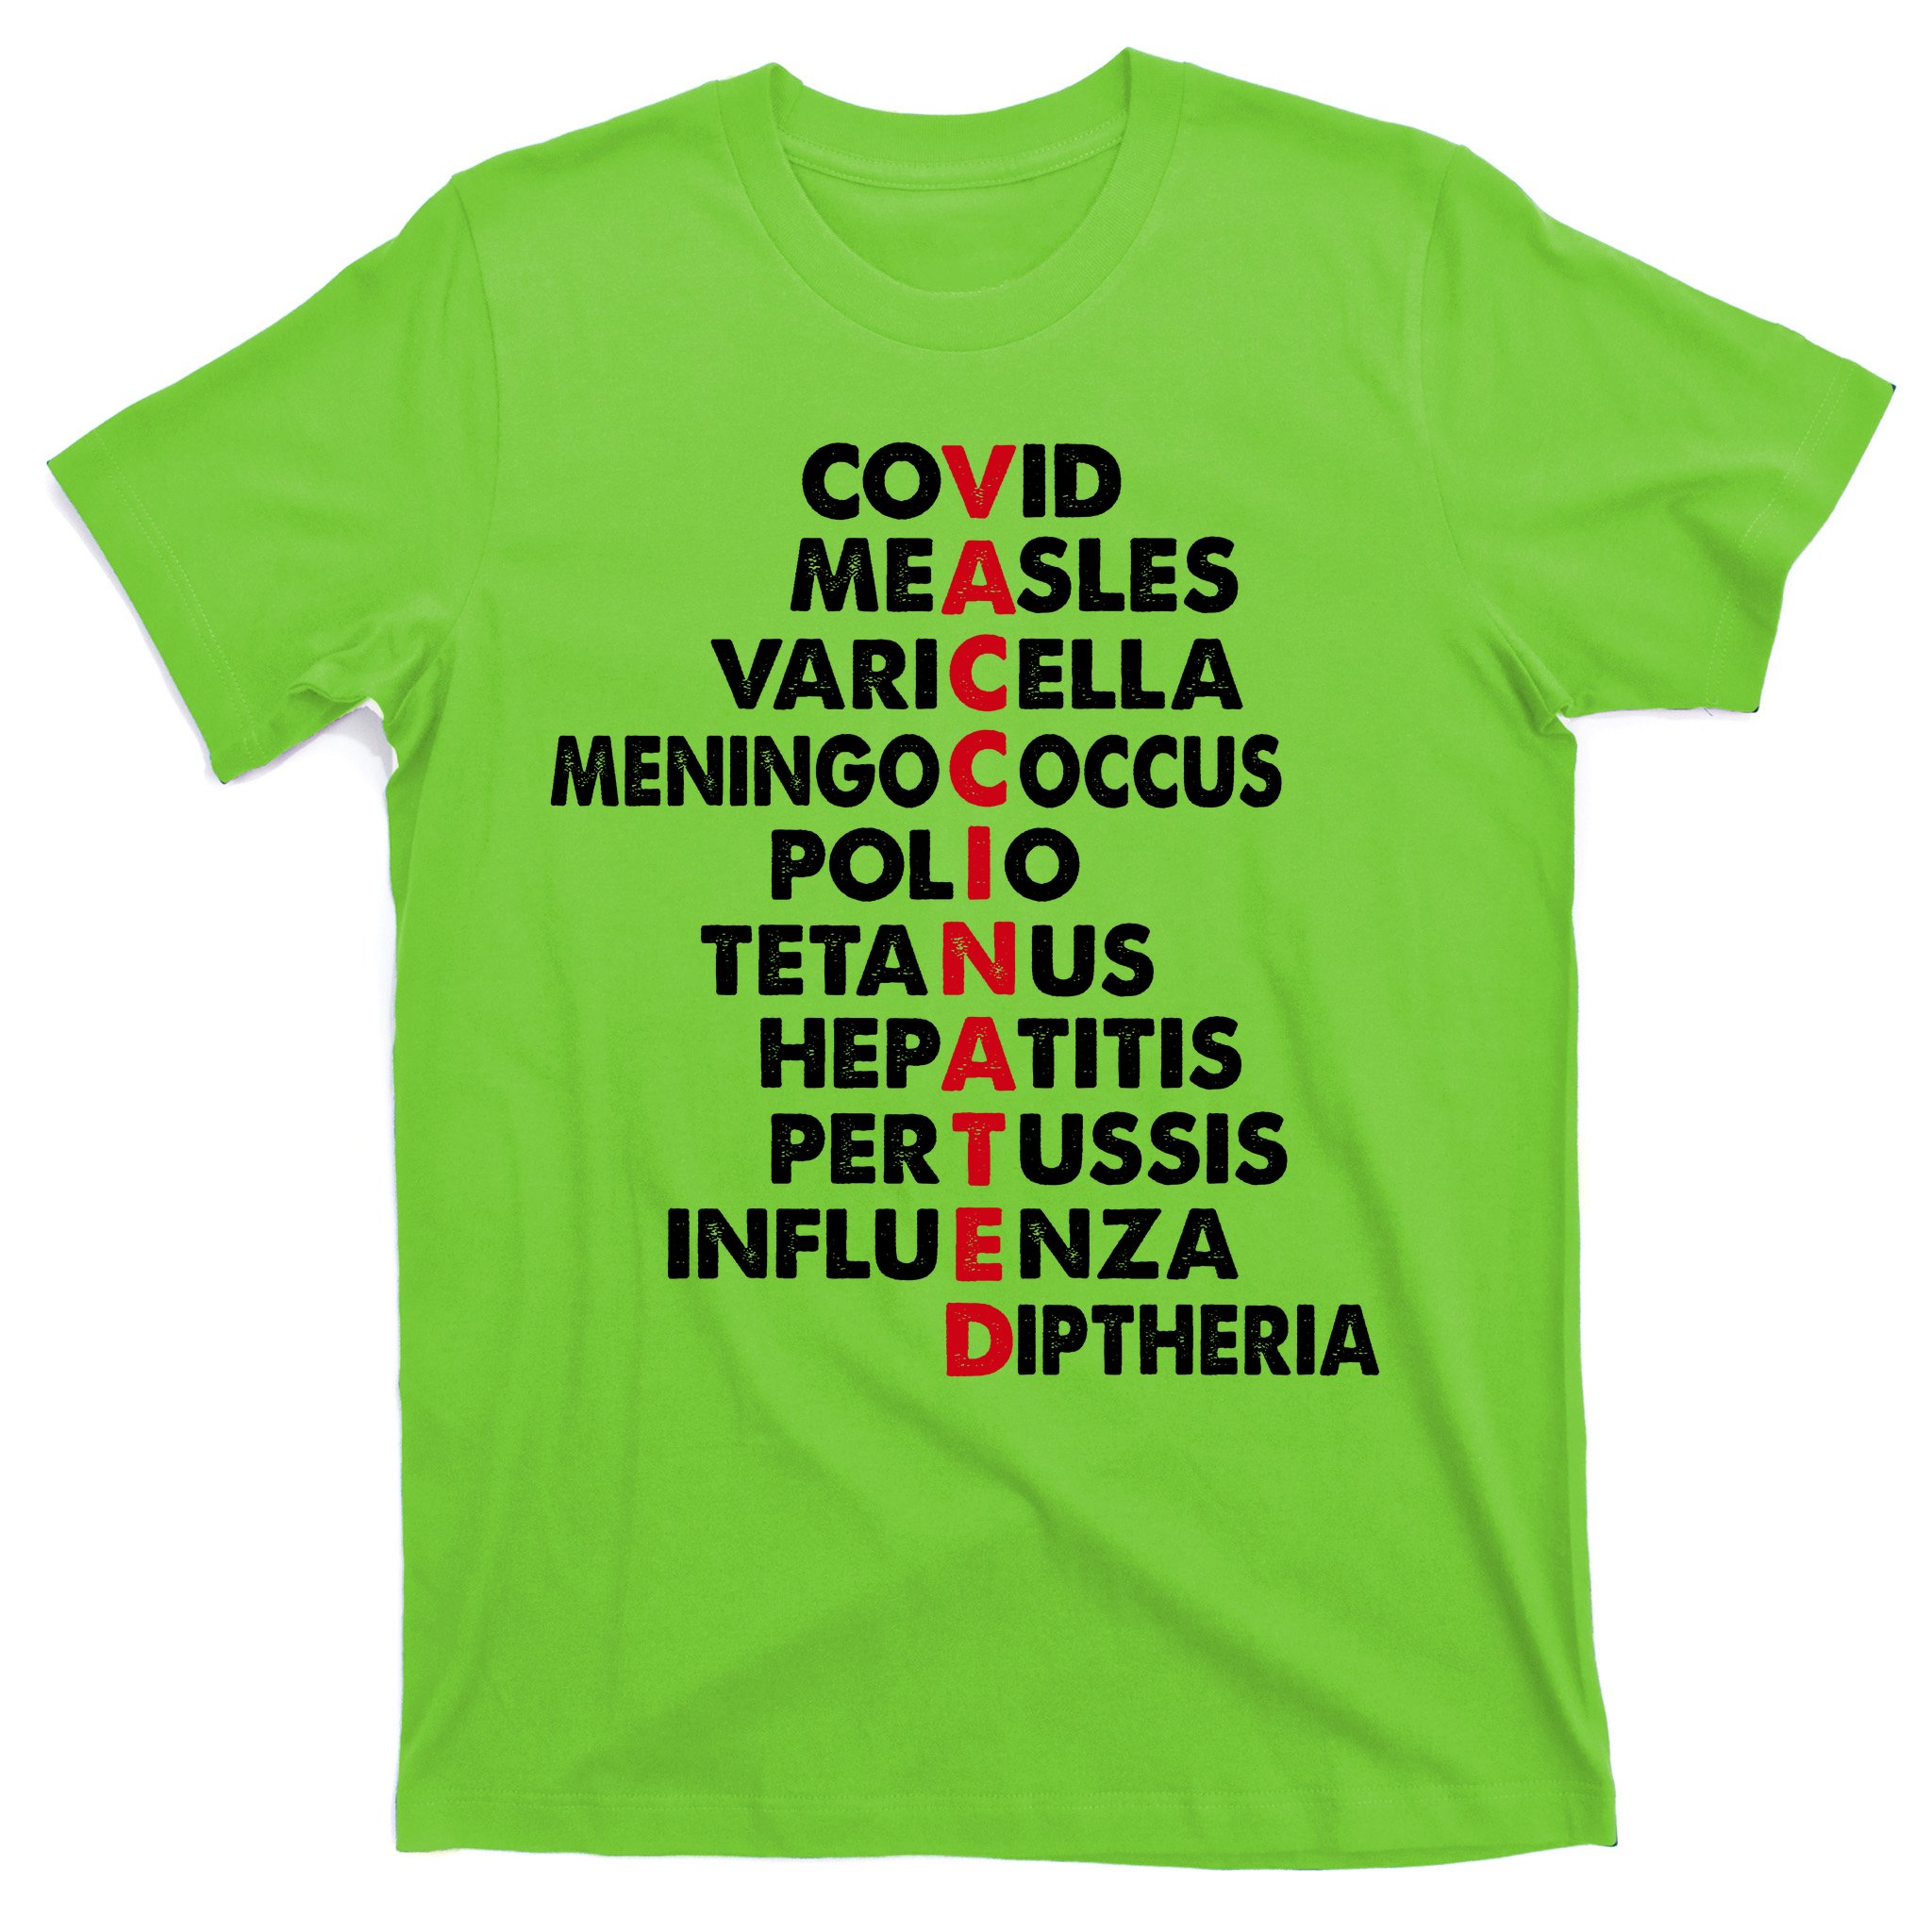 Rainbow Shirt Pride Shirt Vaccinated Shirt Pro Vaccine Shirt Coronavirus Shirt Retro Shirt, Covid 19 Shirt